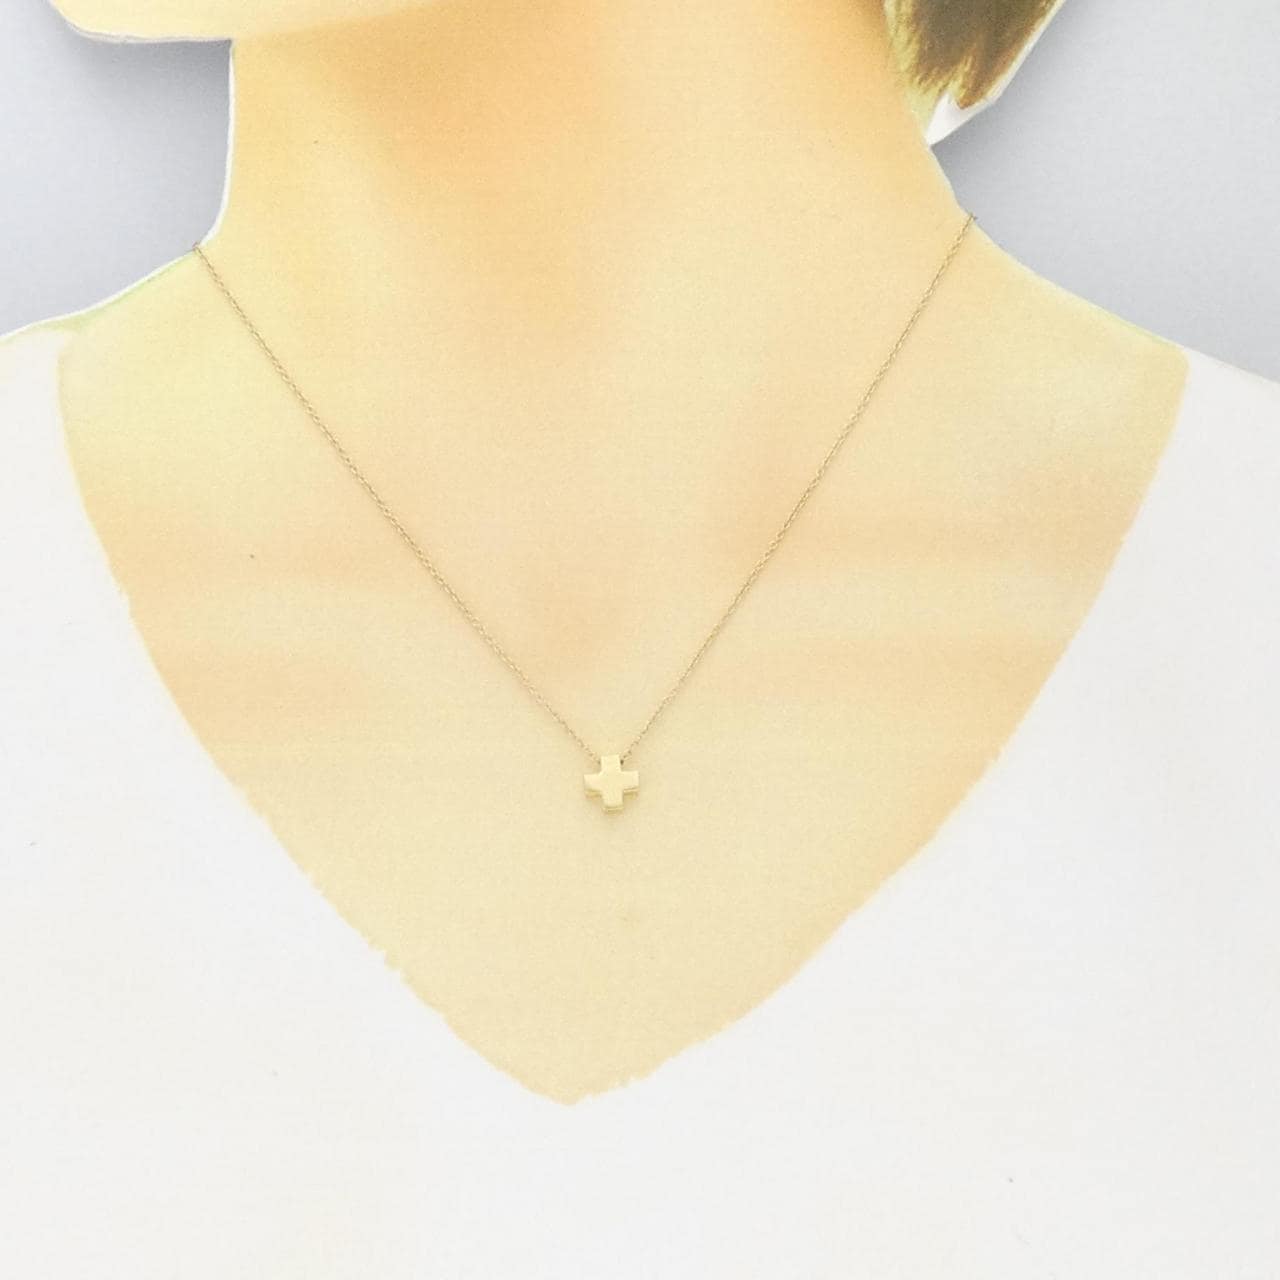 TIFFANY cruciform necklace